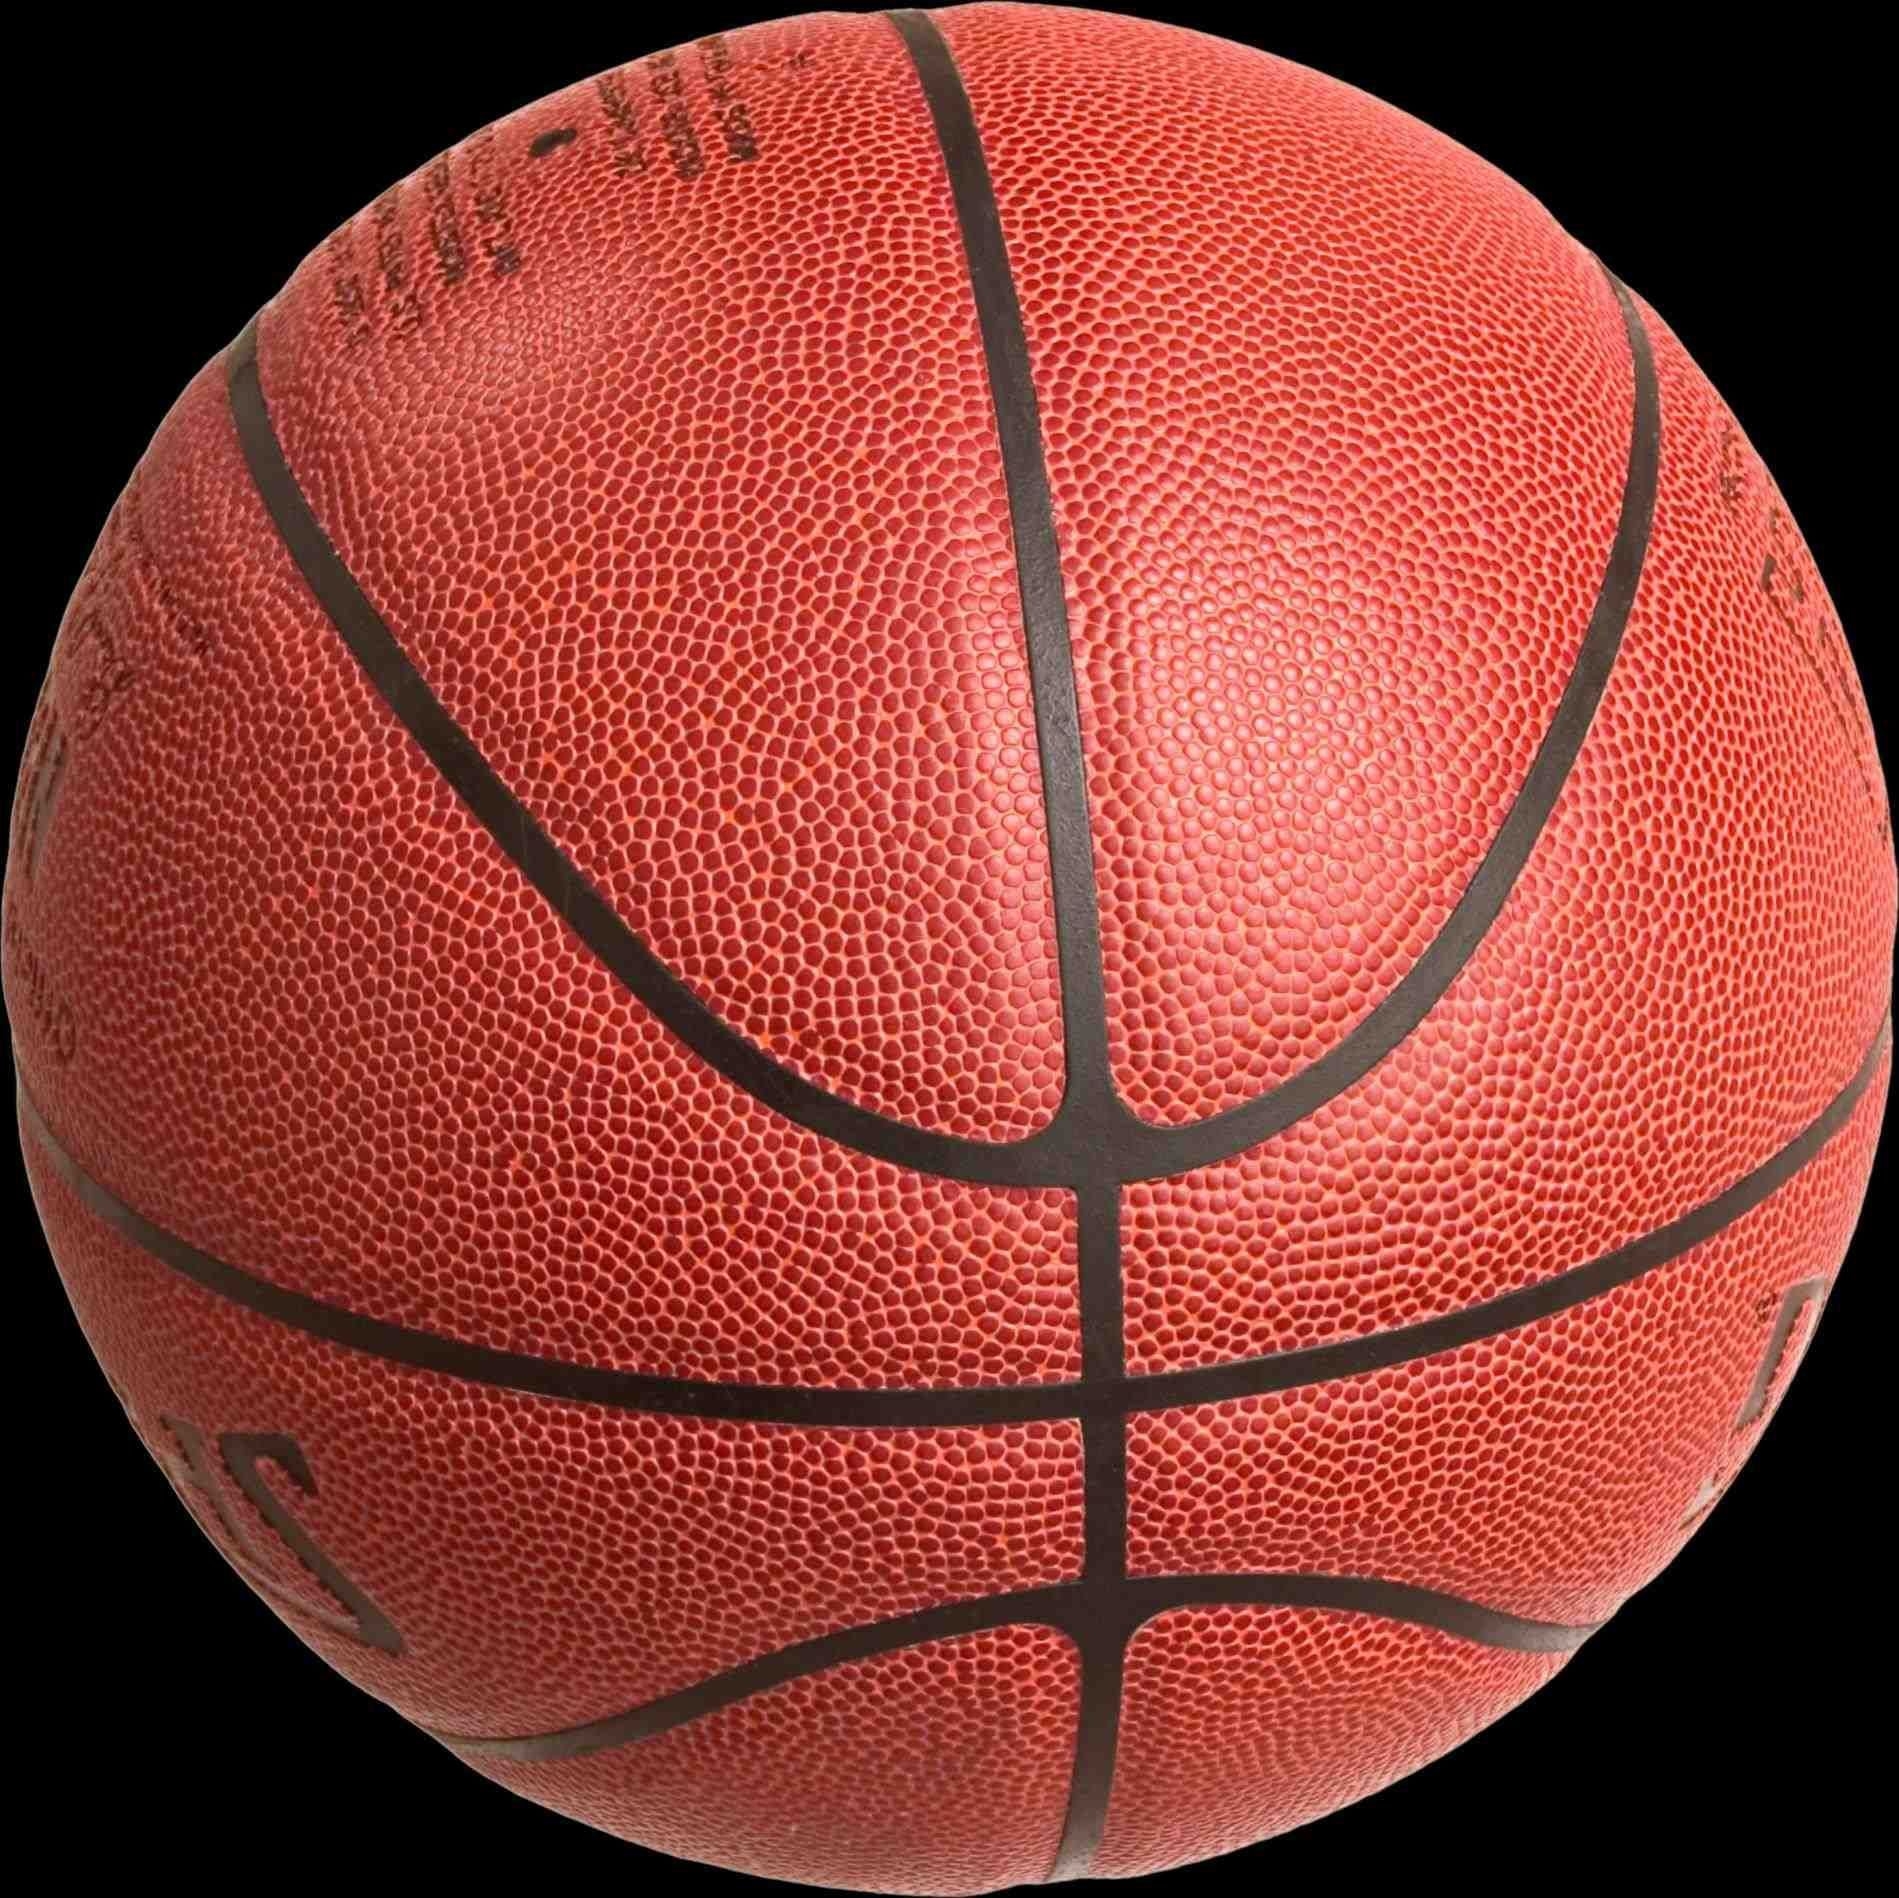 Спортивный мяч в баскетболе. Баскетбольный мяч CS 600. Баскетбольный мяч АСБ. Мяч Spalding баскетбольный 3x3. Мяч АСБ баскетбол.